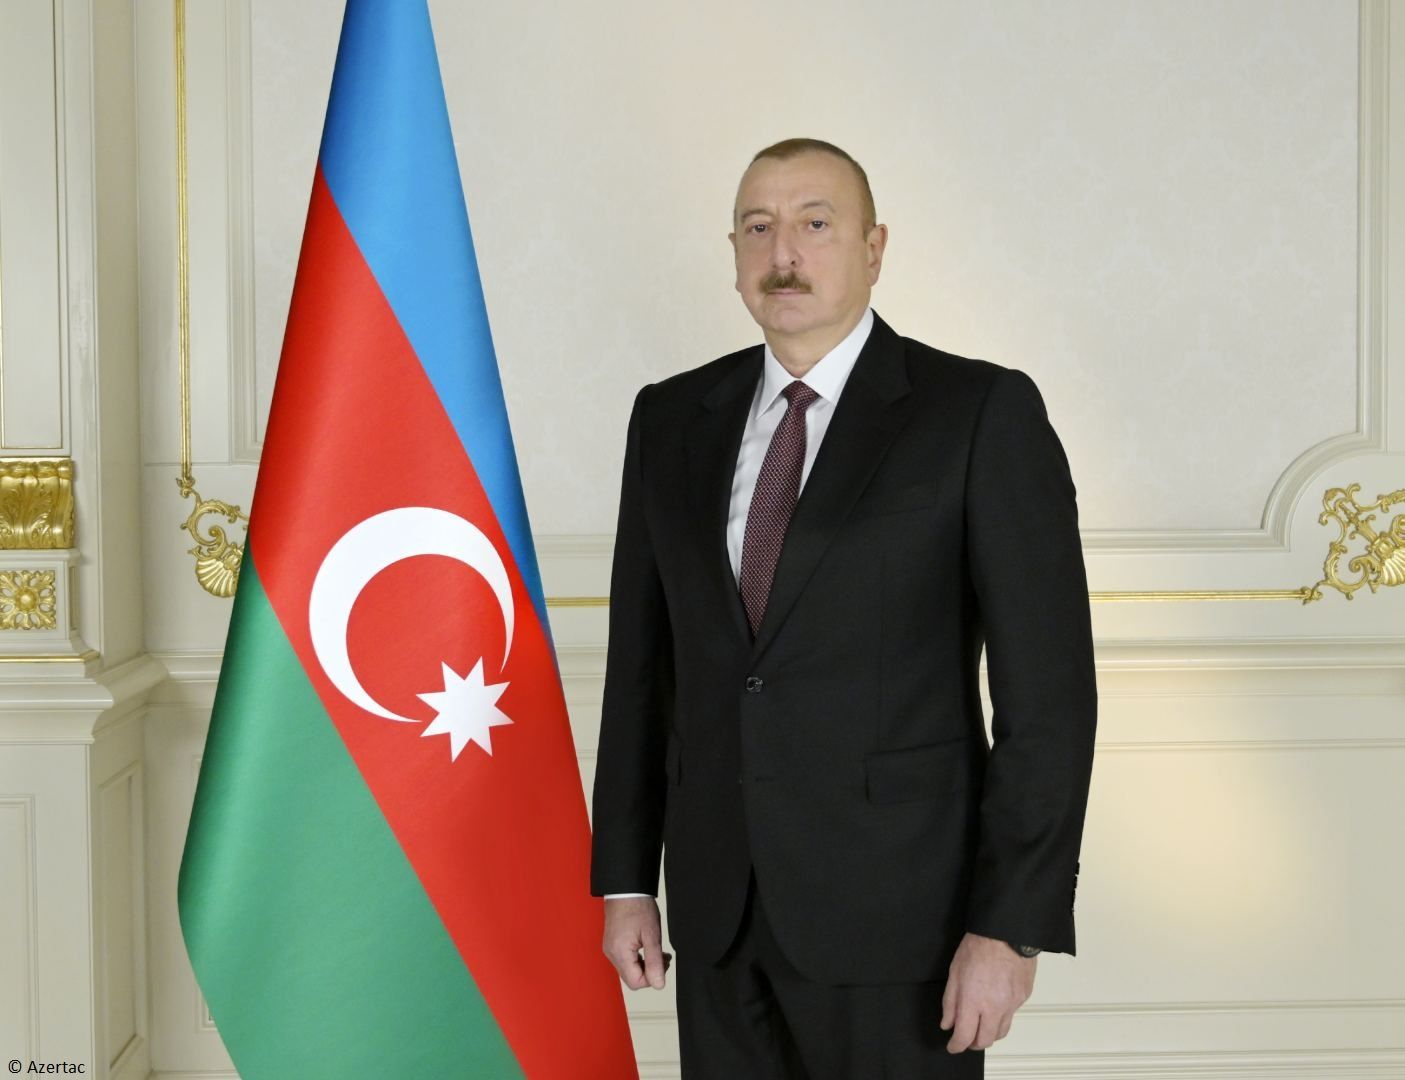 Le président Ilham Aliyev partage sur Twitter une publication relative à la Journée du Salut national